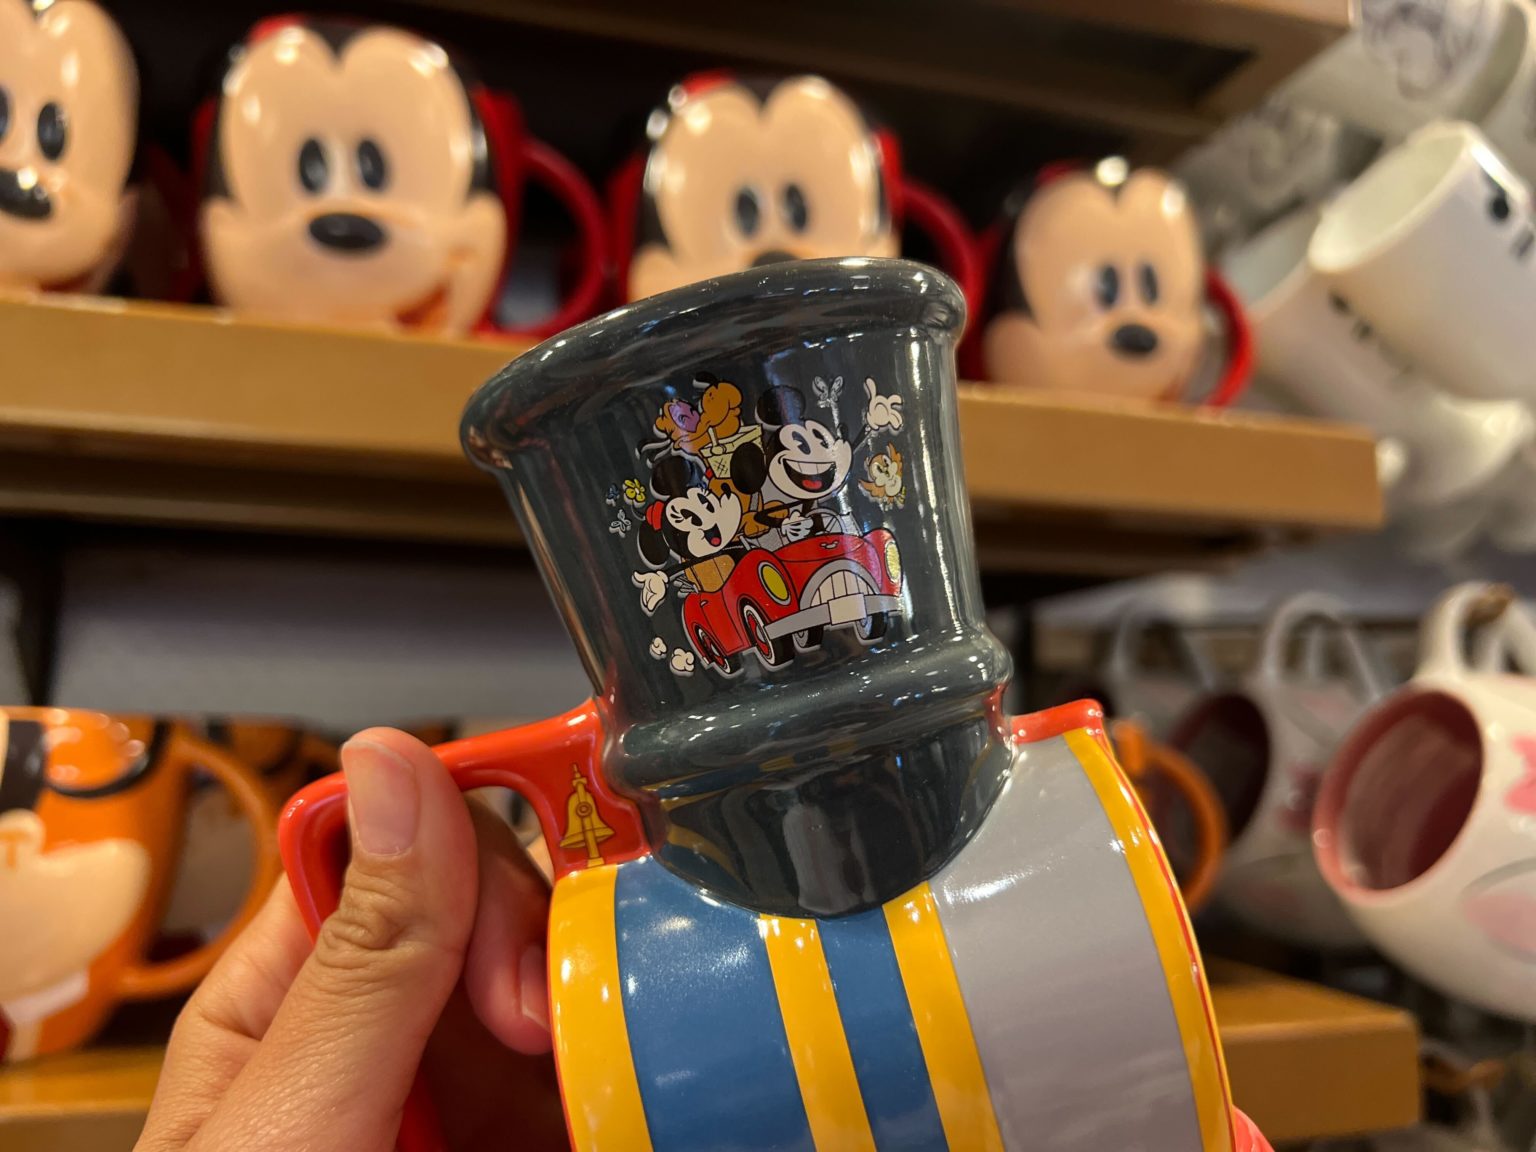 Mickey & Minnie's Runaway Railway Train Mug – Magical Travels by Amy